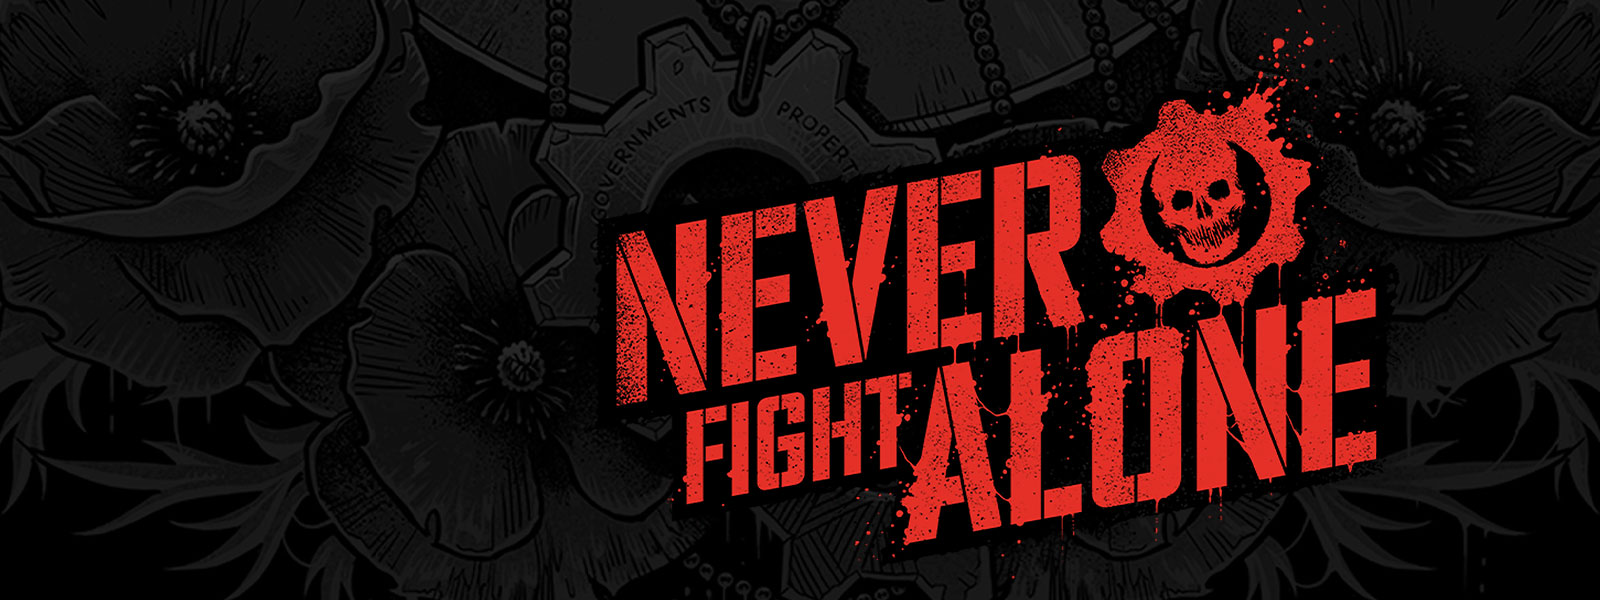 obrázok na pozadí so zobrazenými slovami „Never fight alone“